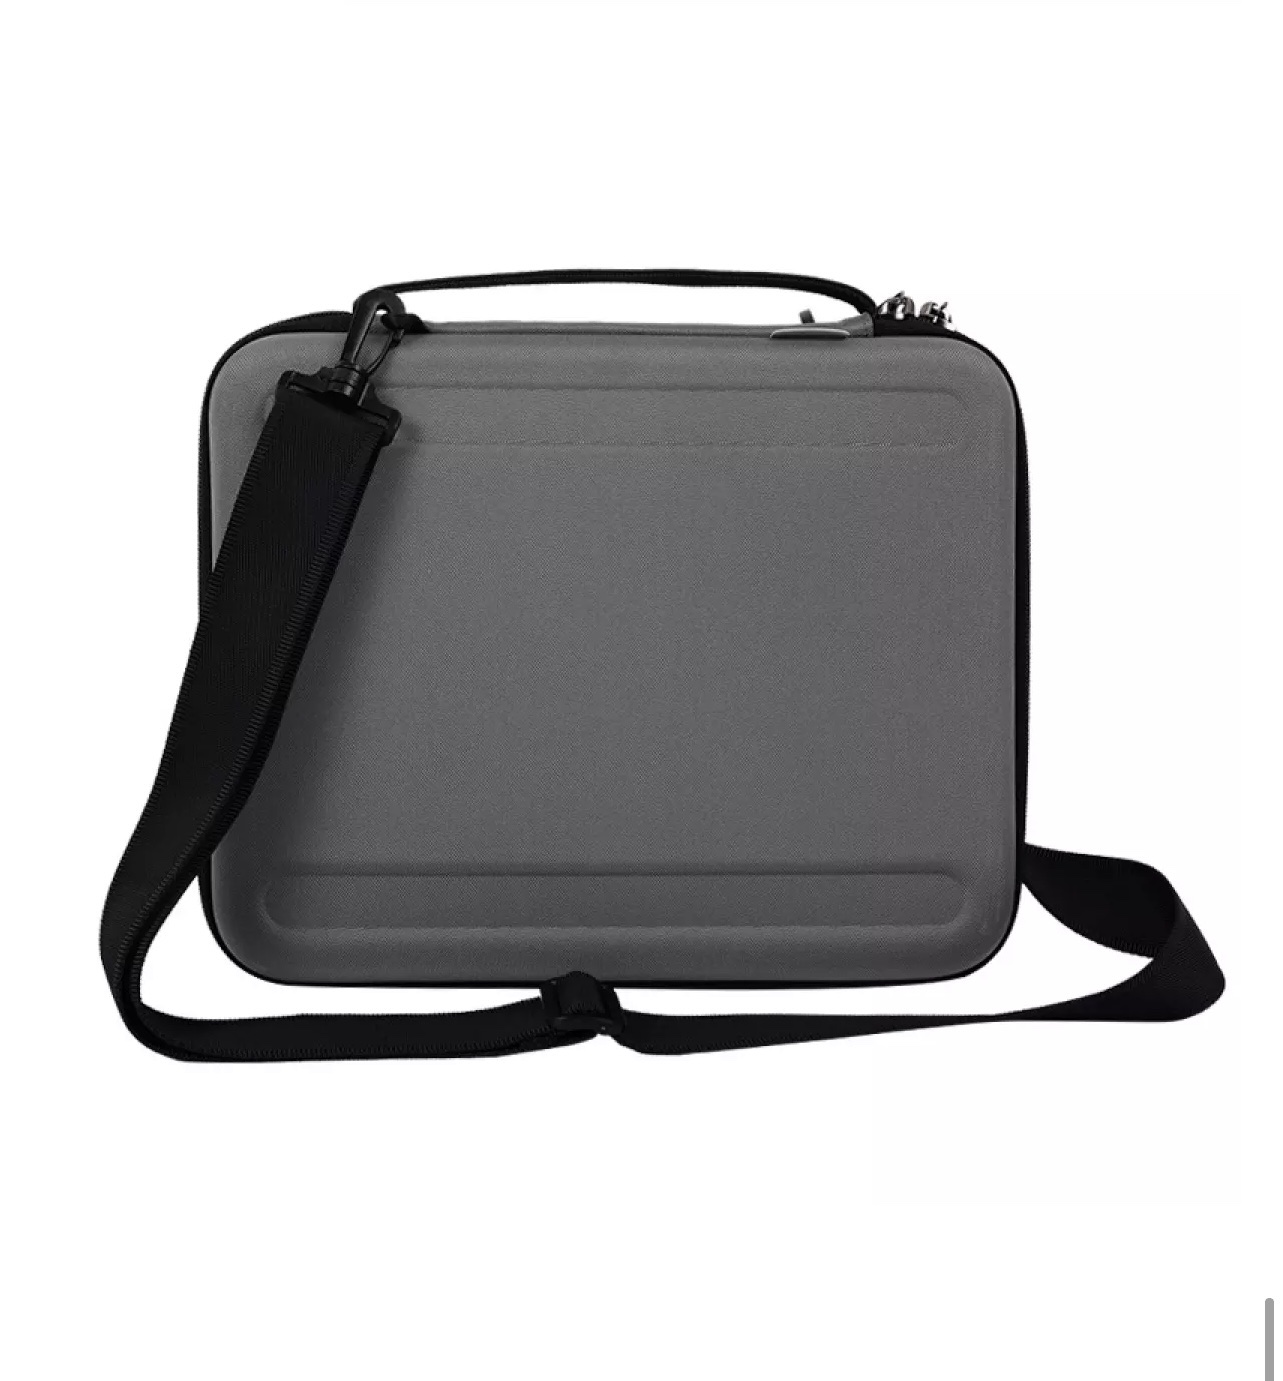 Túi Đeo Chống Va Đập WiWU Parallel Hardshell Bag Dành Cho Laptop 12.9, 13.3 Inch Chiếc Hộp Đa Năng Đựng Macbook - Hàng Chính Hãng